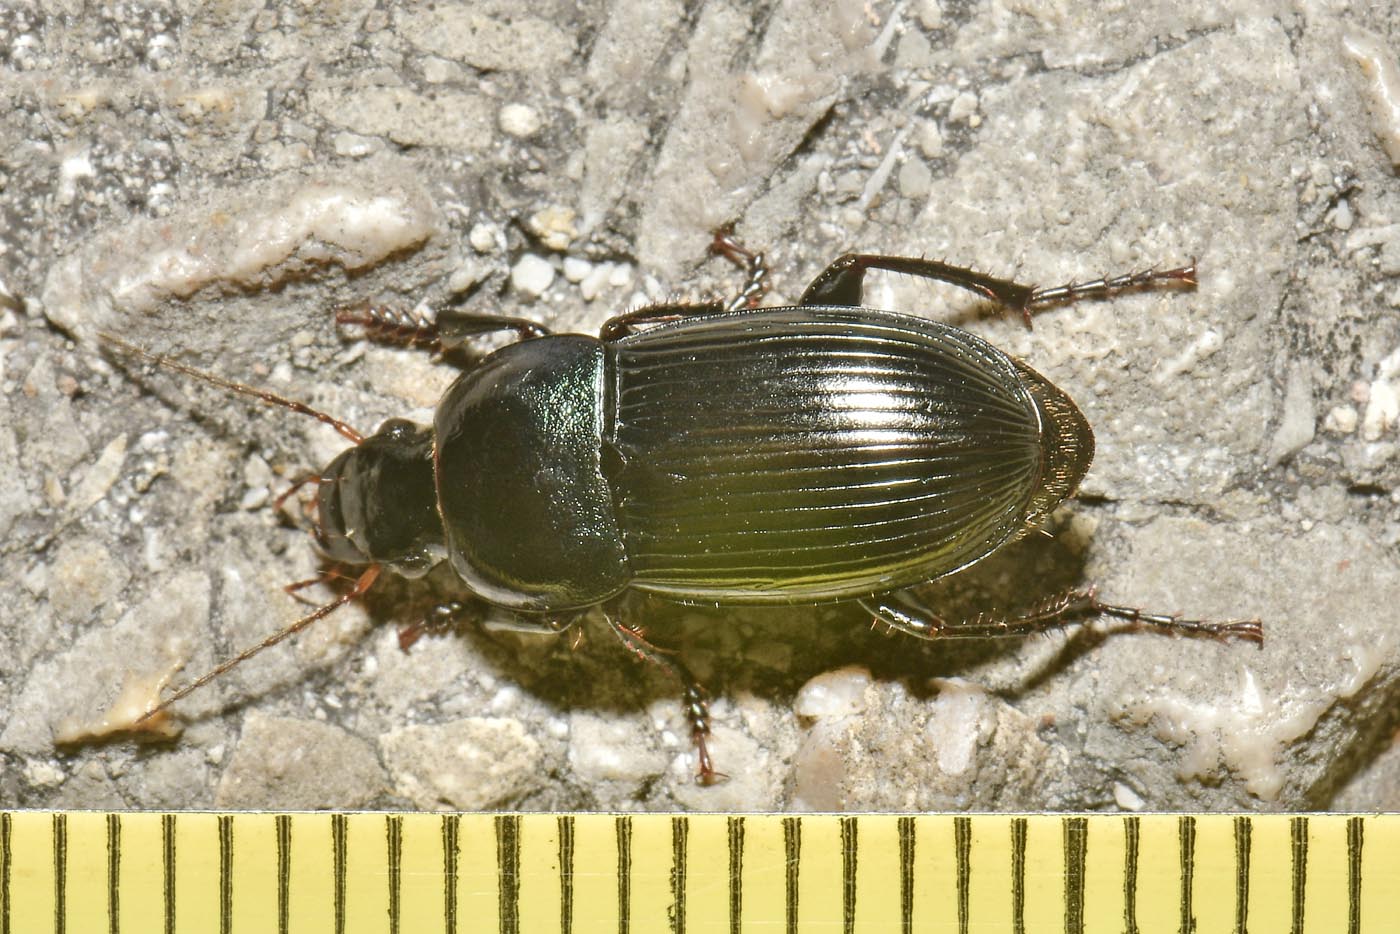 Carabidae: Harpalus dimidiatus? S.